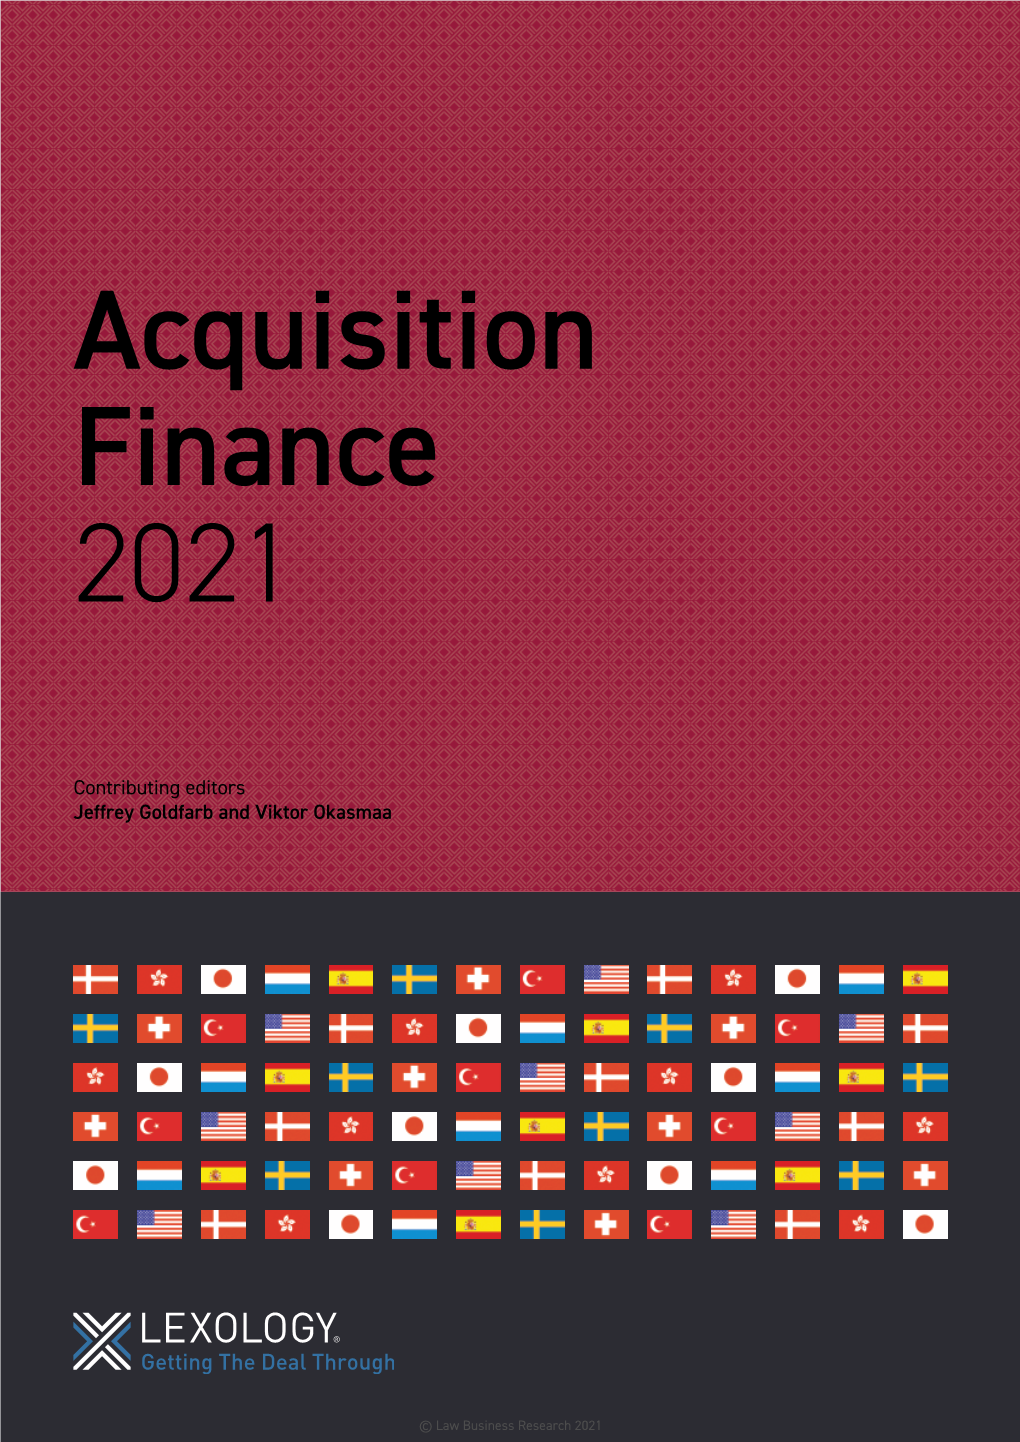 Acquisition Finance 2021 Acquisition Finance 2021